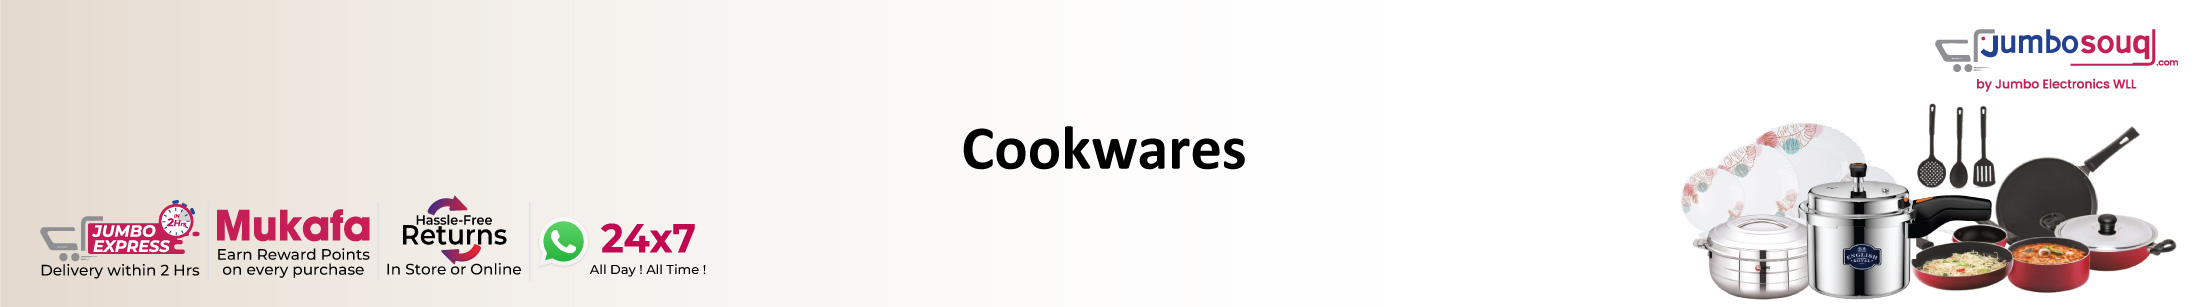 Cookwares